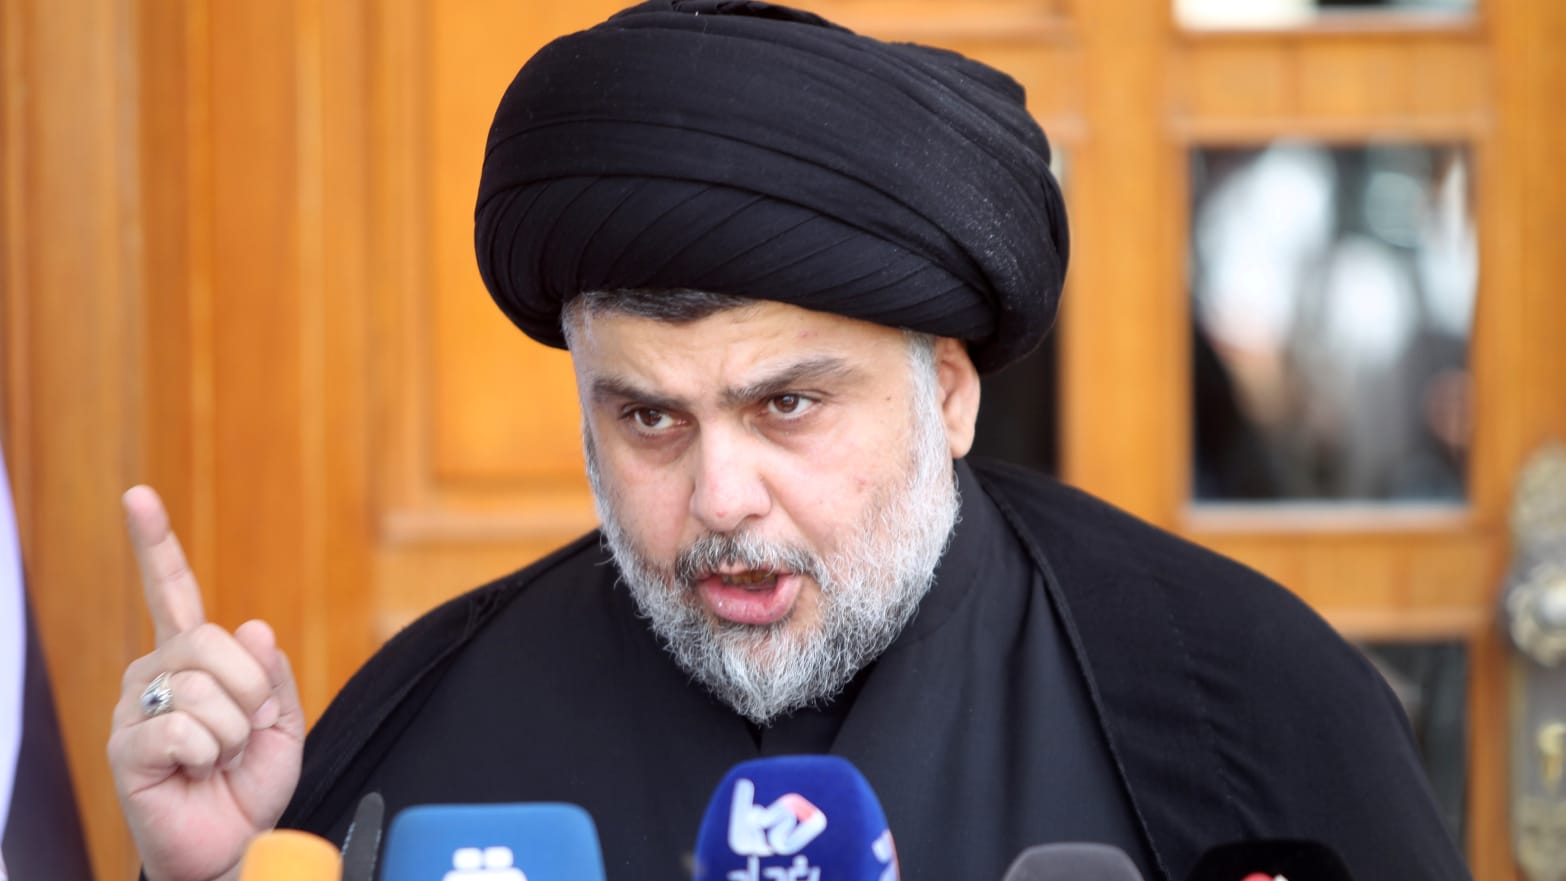 Moqtada al-Sadr, the Donald Trump of Iraq